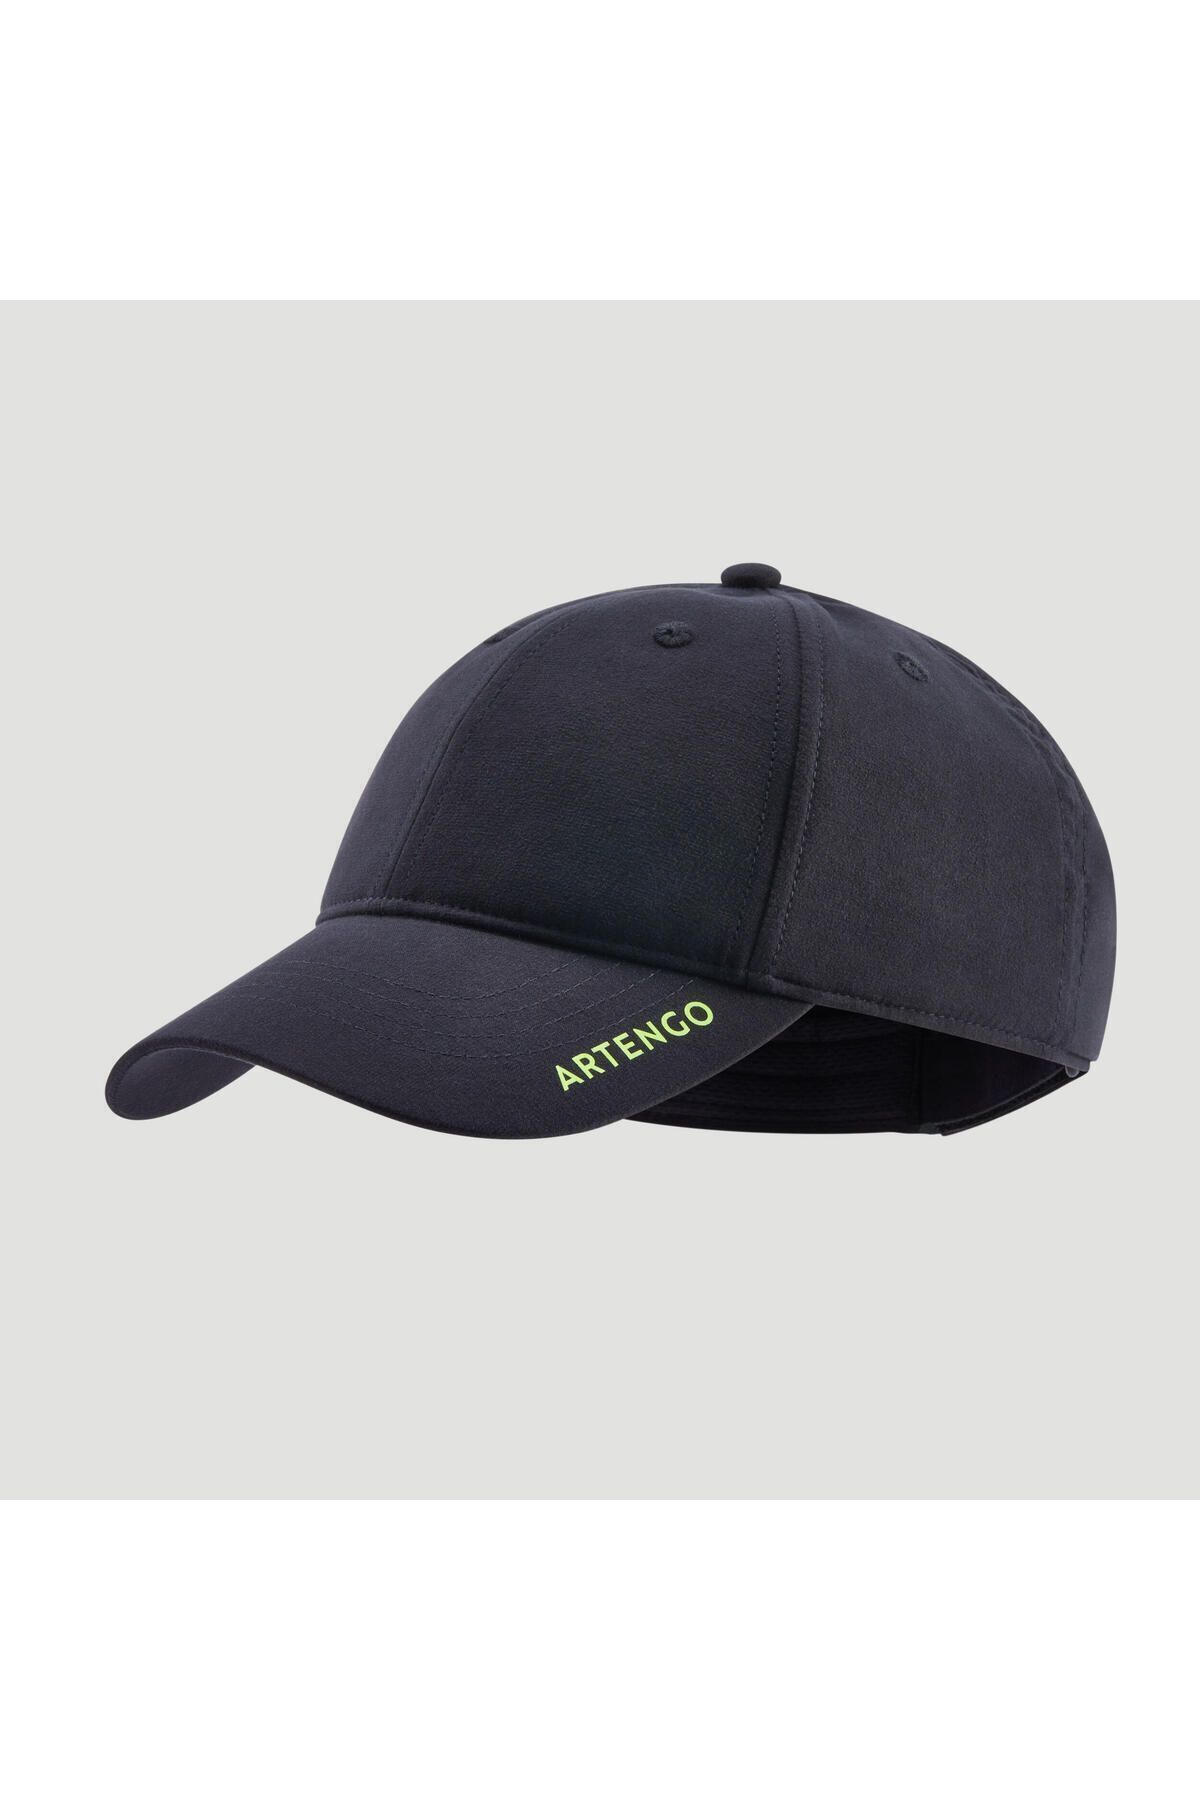 Decathlon Artengo Tenis Şapkası - 54 Cm - Siyah - Tc500 8525603